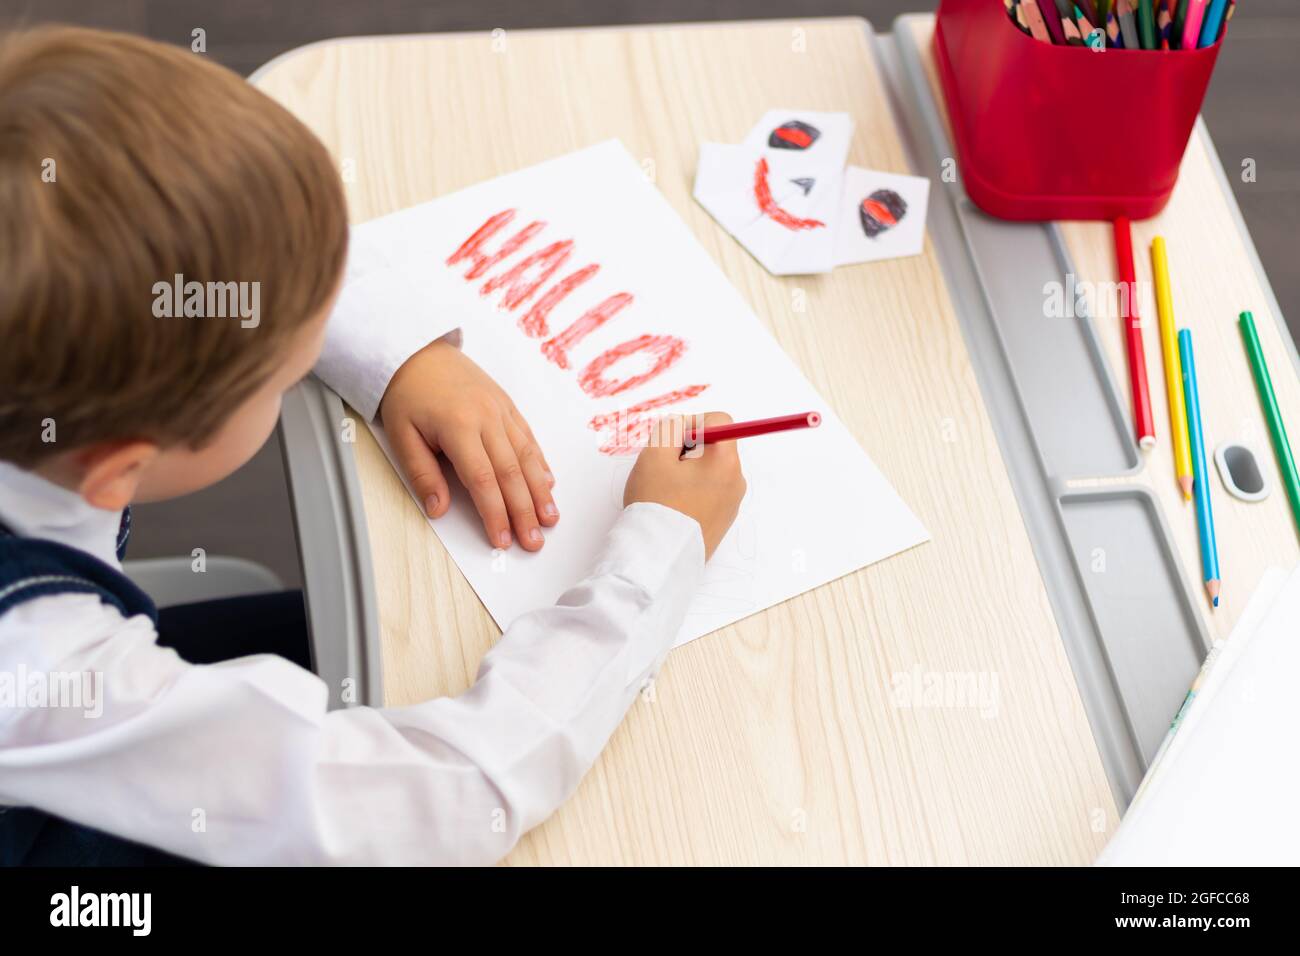 Ein Erstklässler zeichnet mit einem roten, hellen Bleistift auf ein weißes Blatt Papier eine Postkarte für den Feiertag von halloween, während er an einem weißen Tisch sitzt. Se Stockfoto